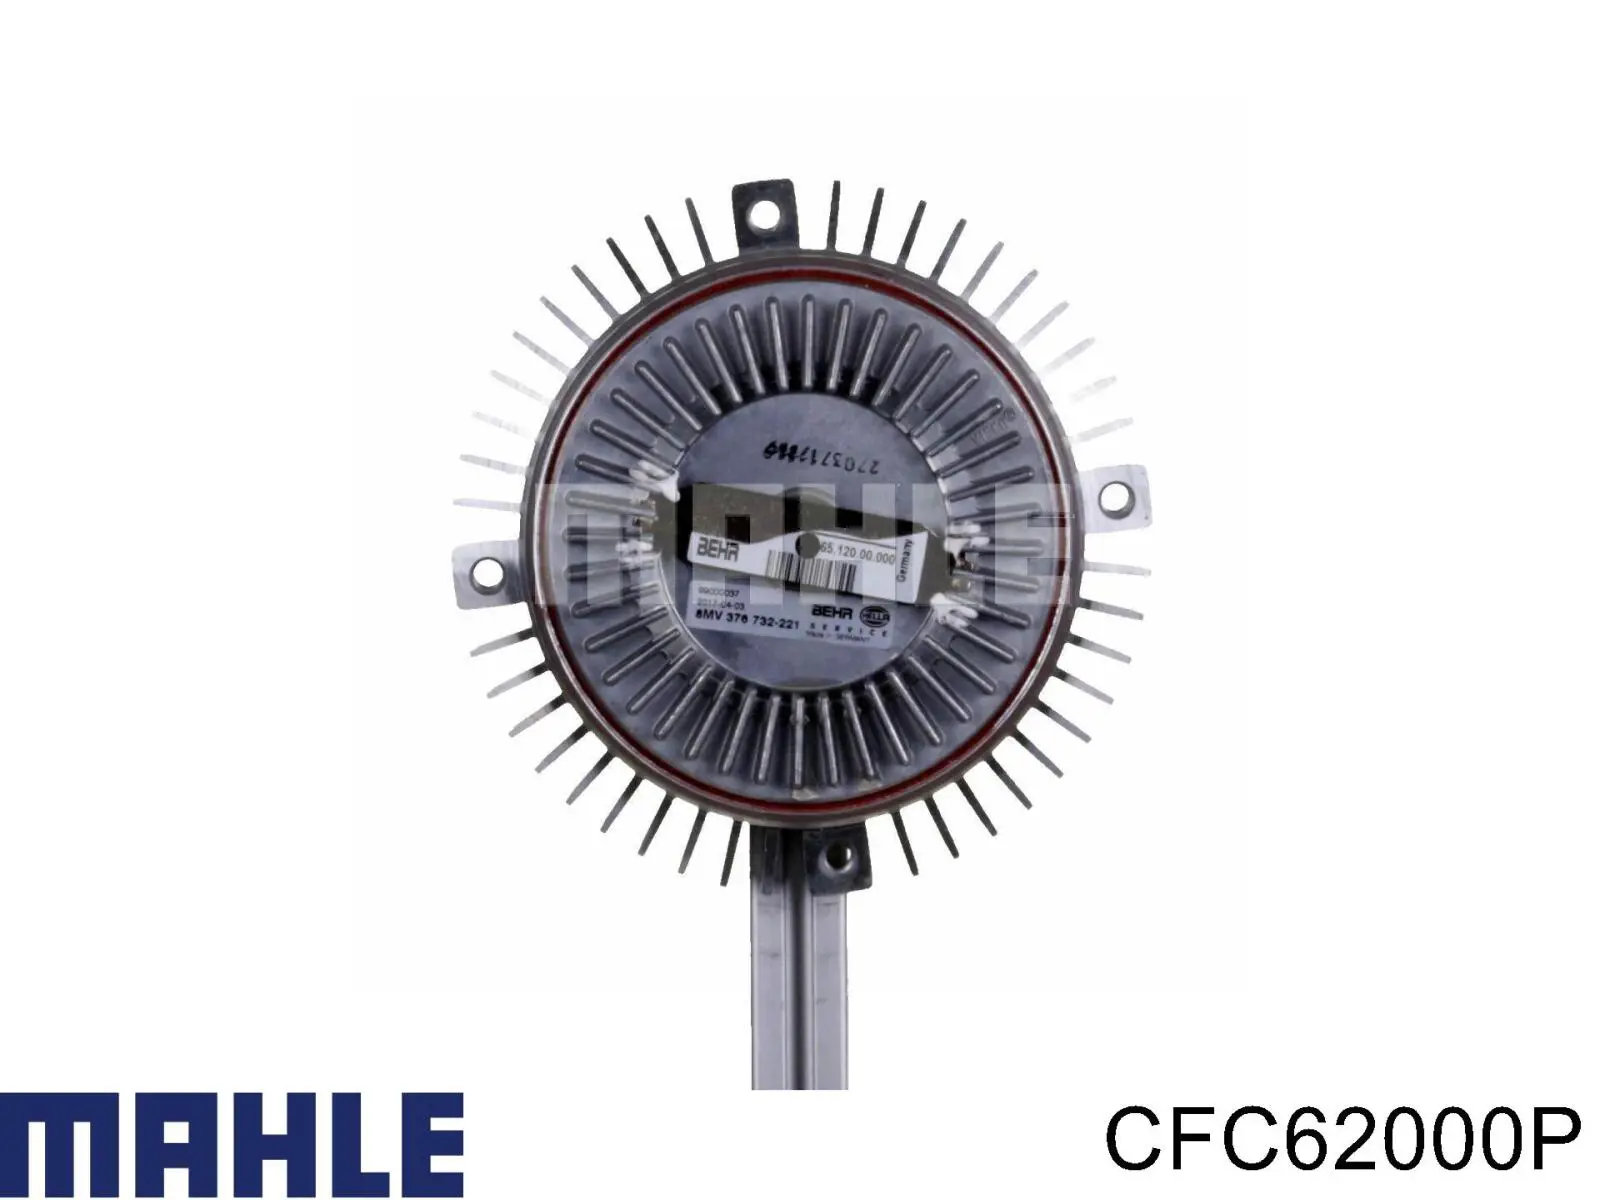 CFC 62 000P Mahle Original embrague, ventilador del radiador